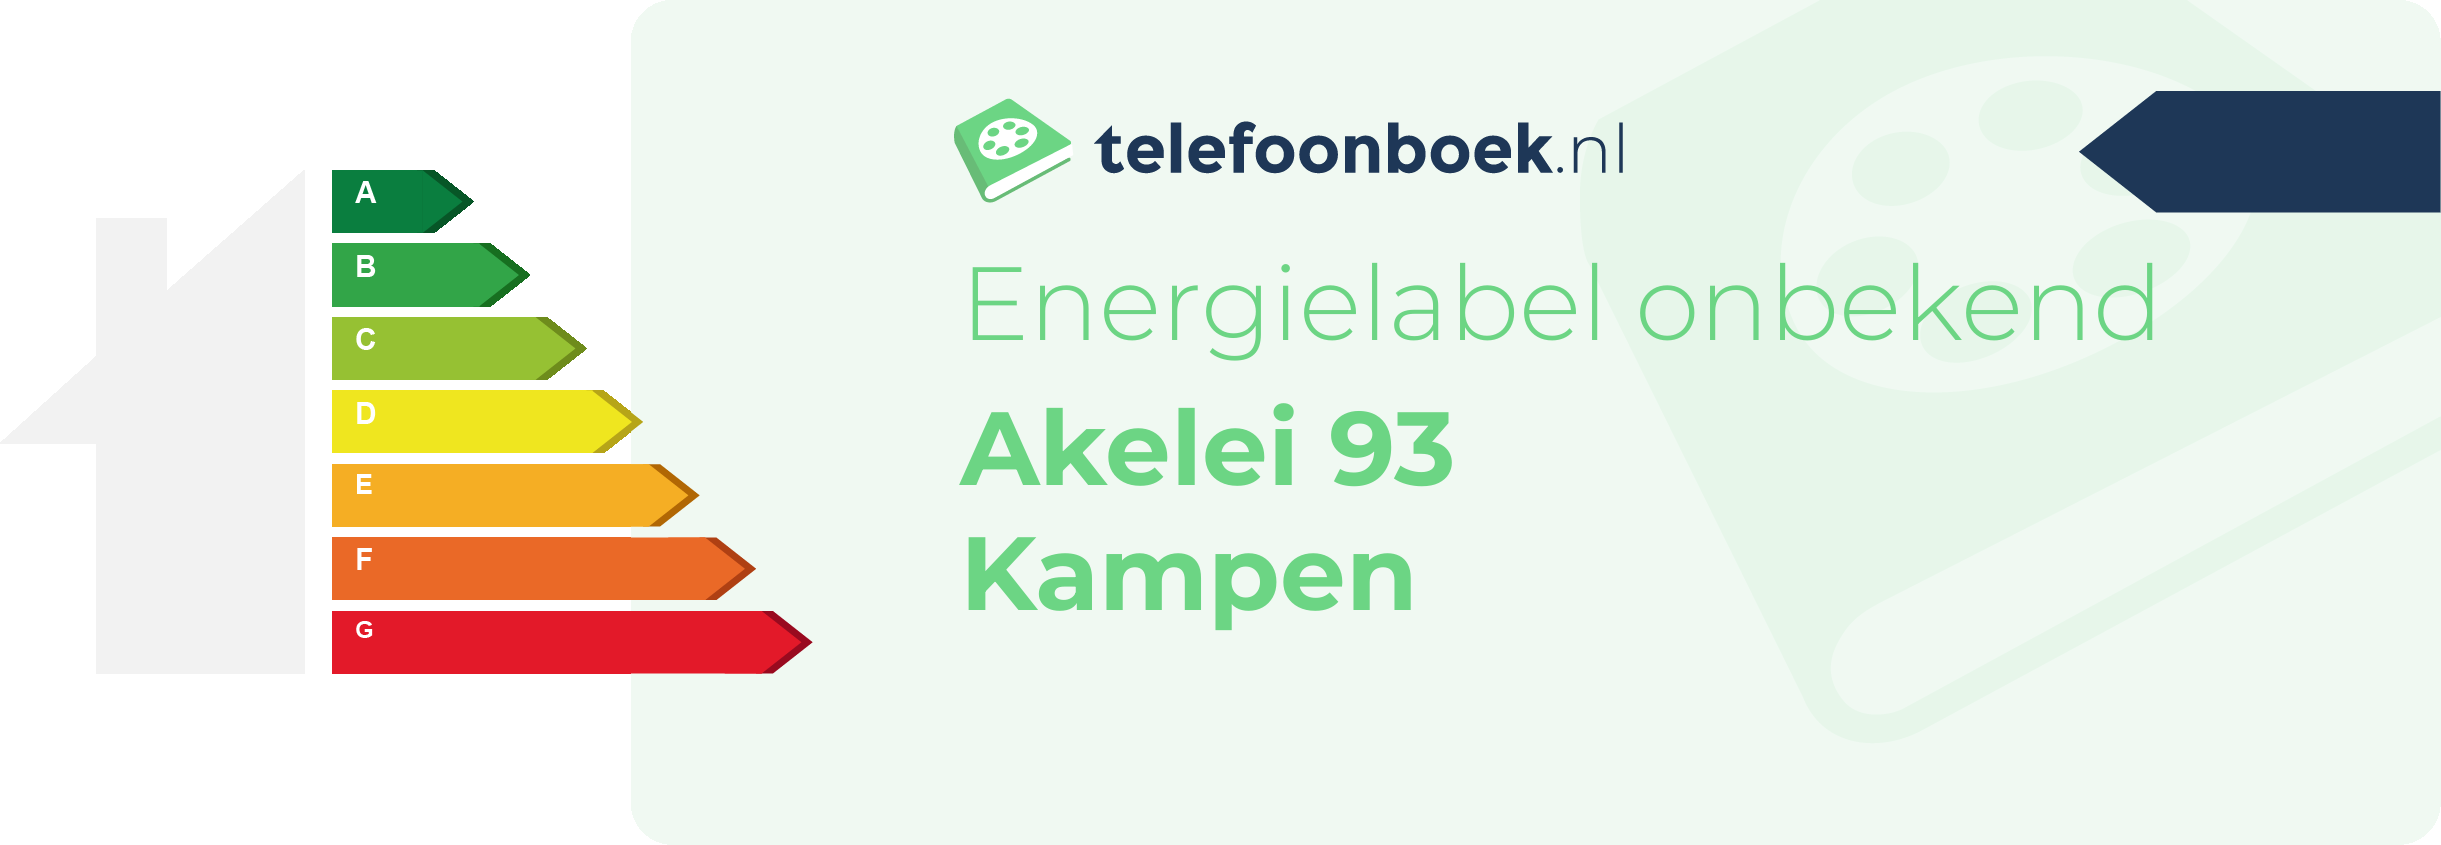 Energielabel Akelei 93 Kampen